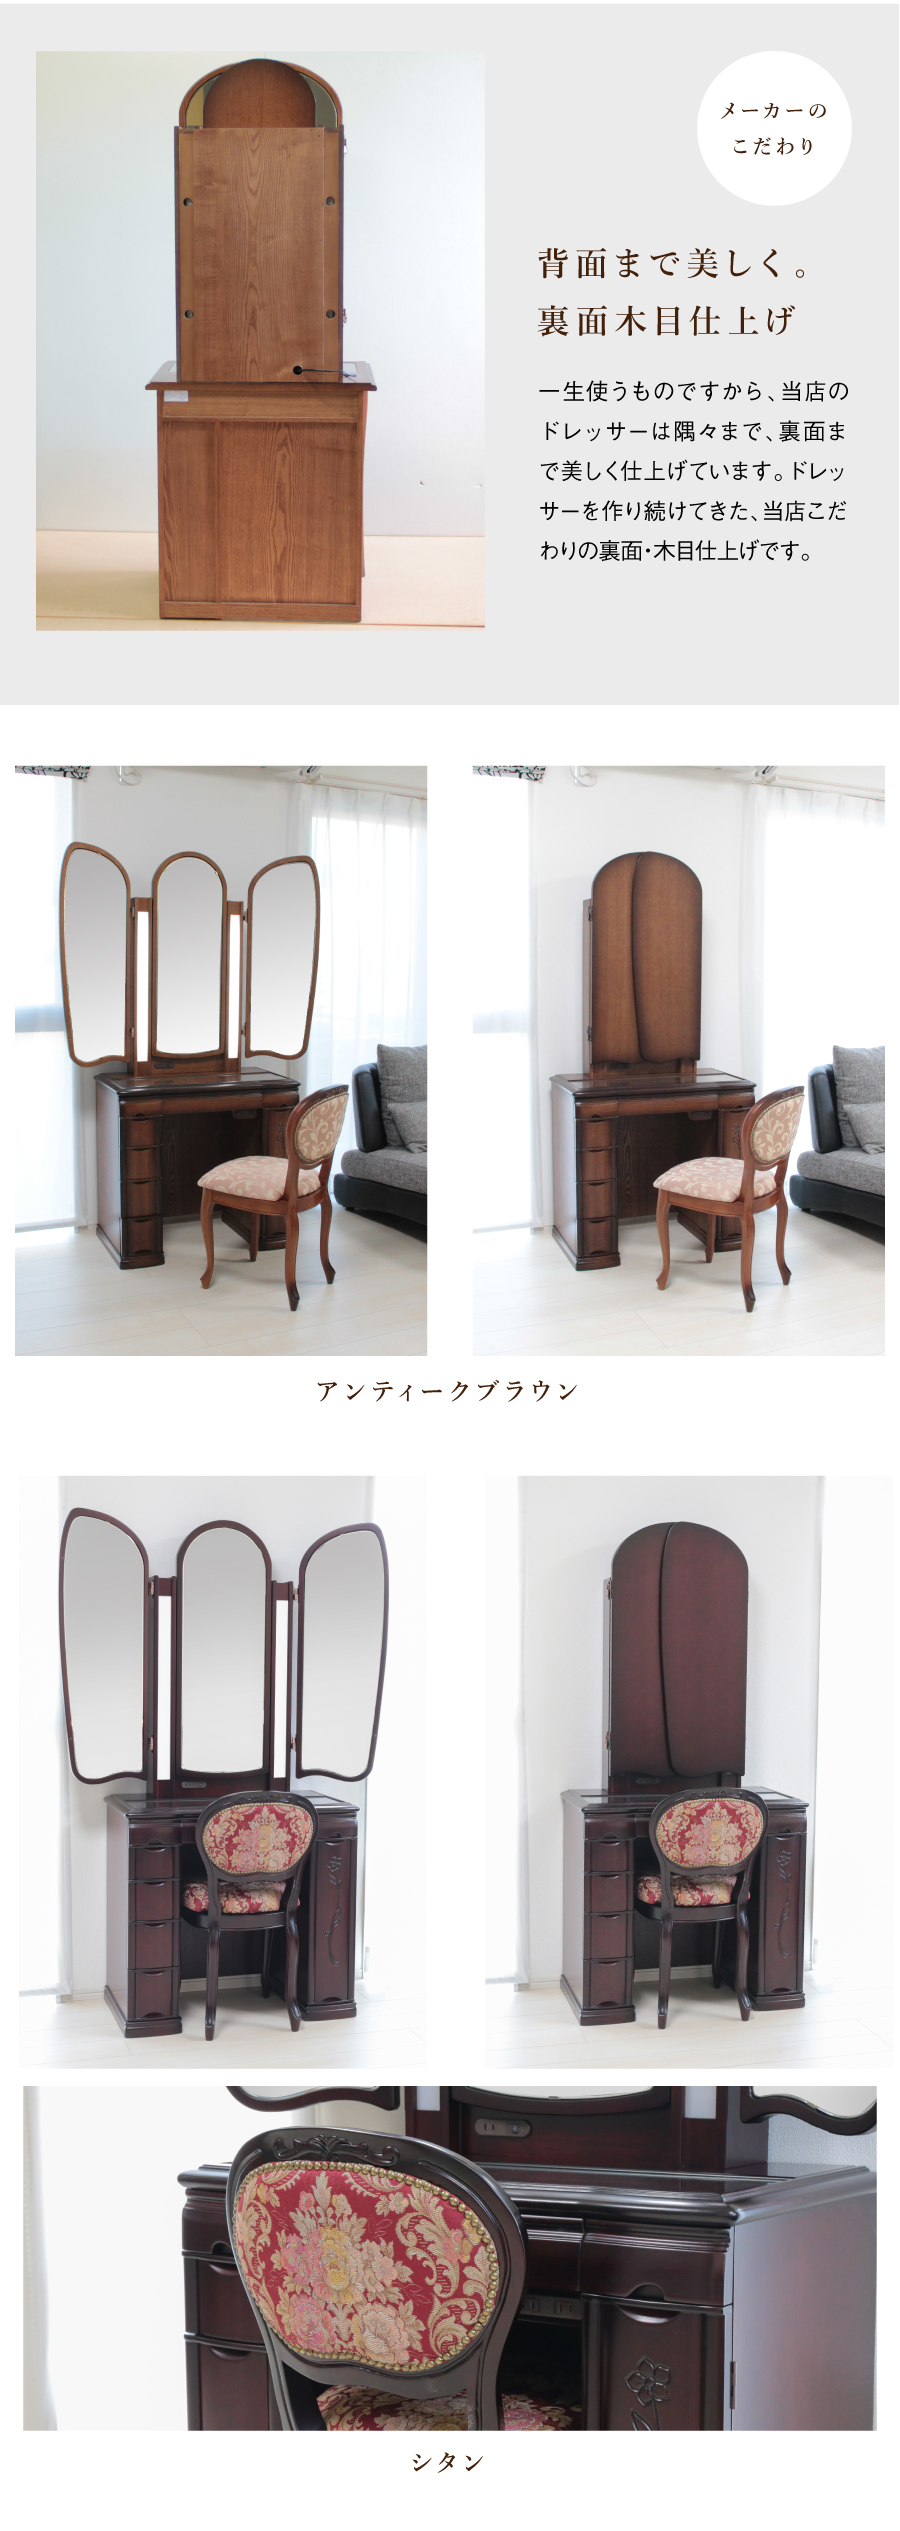 アンティークドレッサーbellmer(ベルメール)　工芸品三面鏡収納ドレッサー/椅子セット。